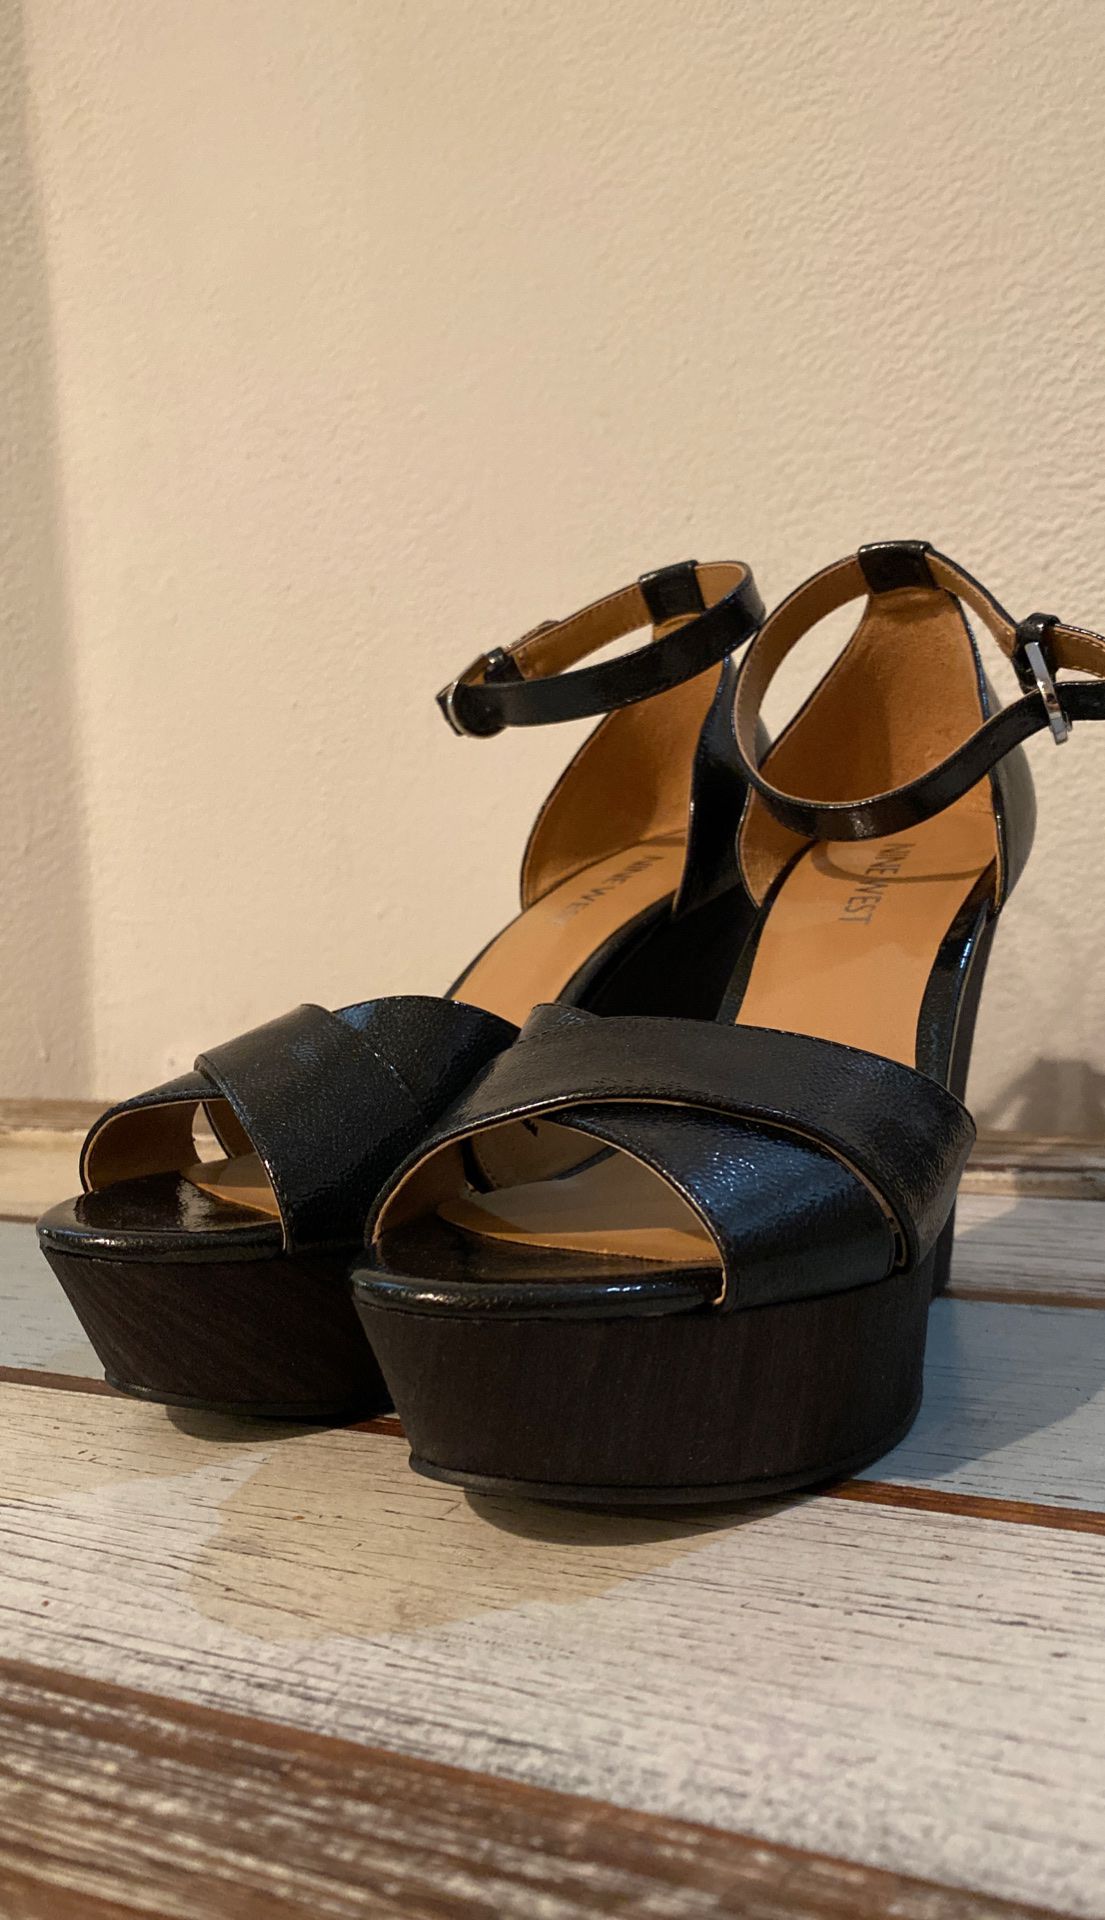 Ninewest booties 6 women’s shoes heels boots sandals wedge